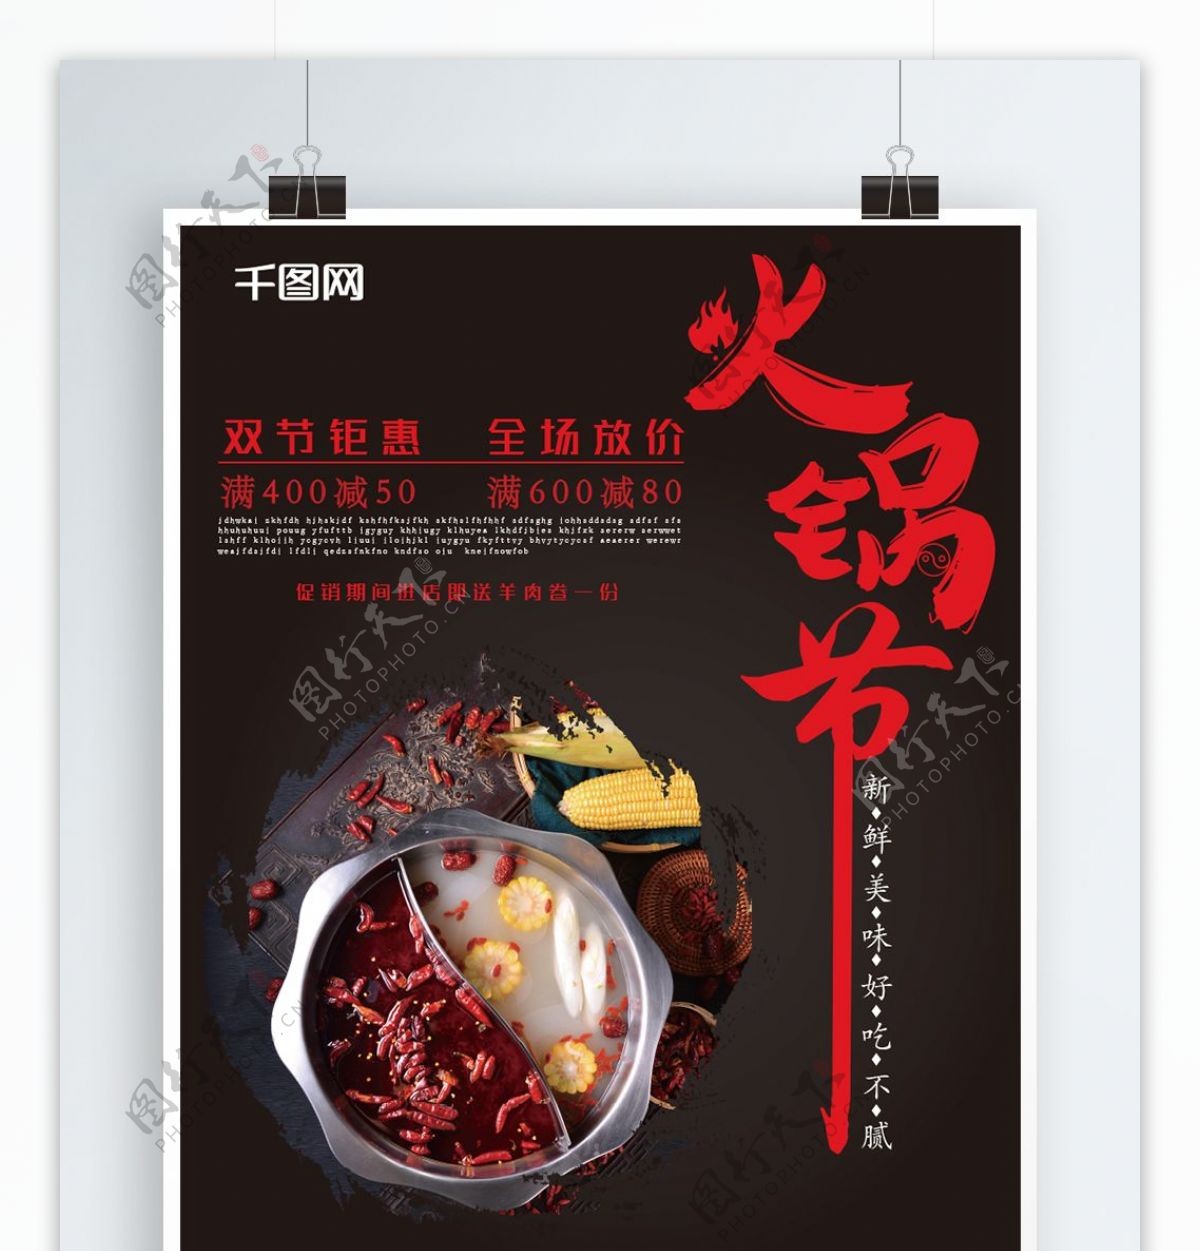 火锅店促销宣传打折海报双节钜惠美食